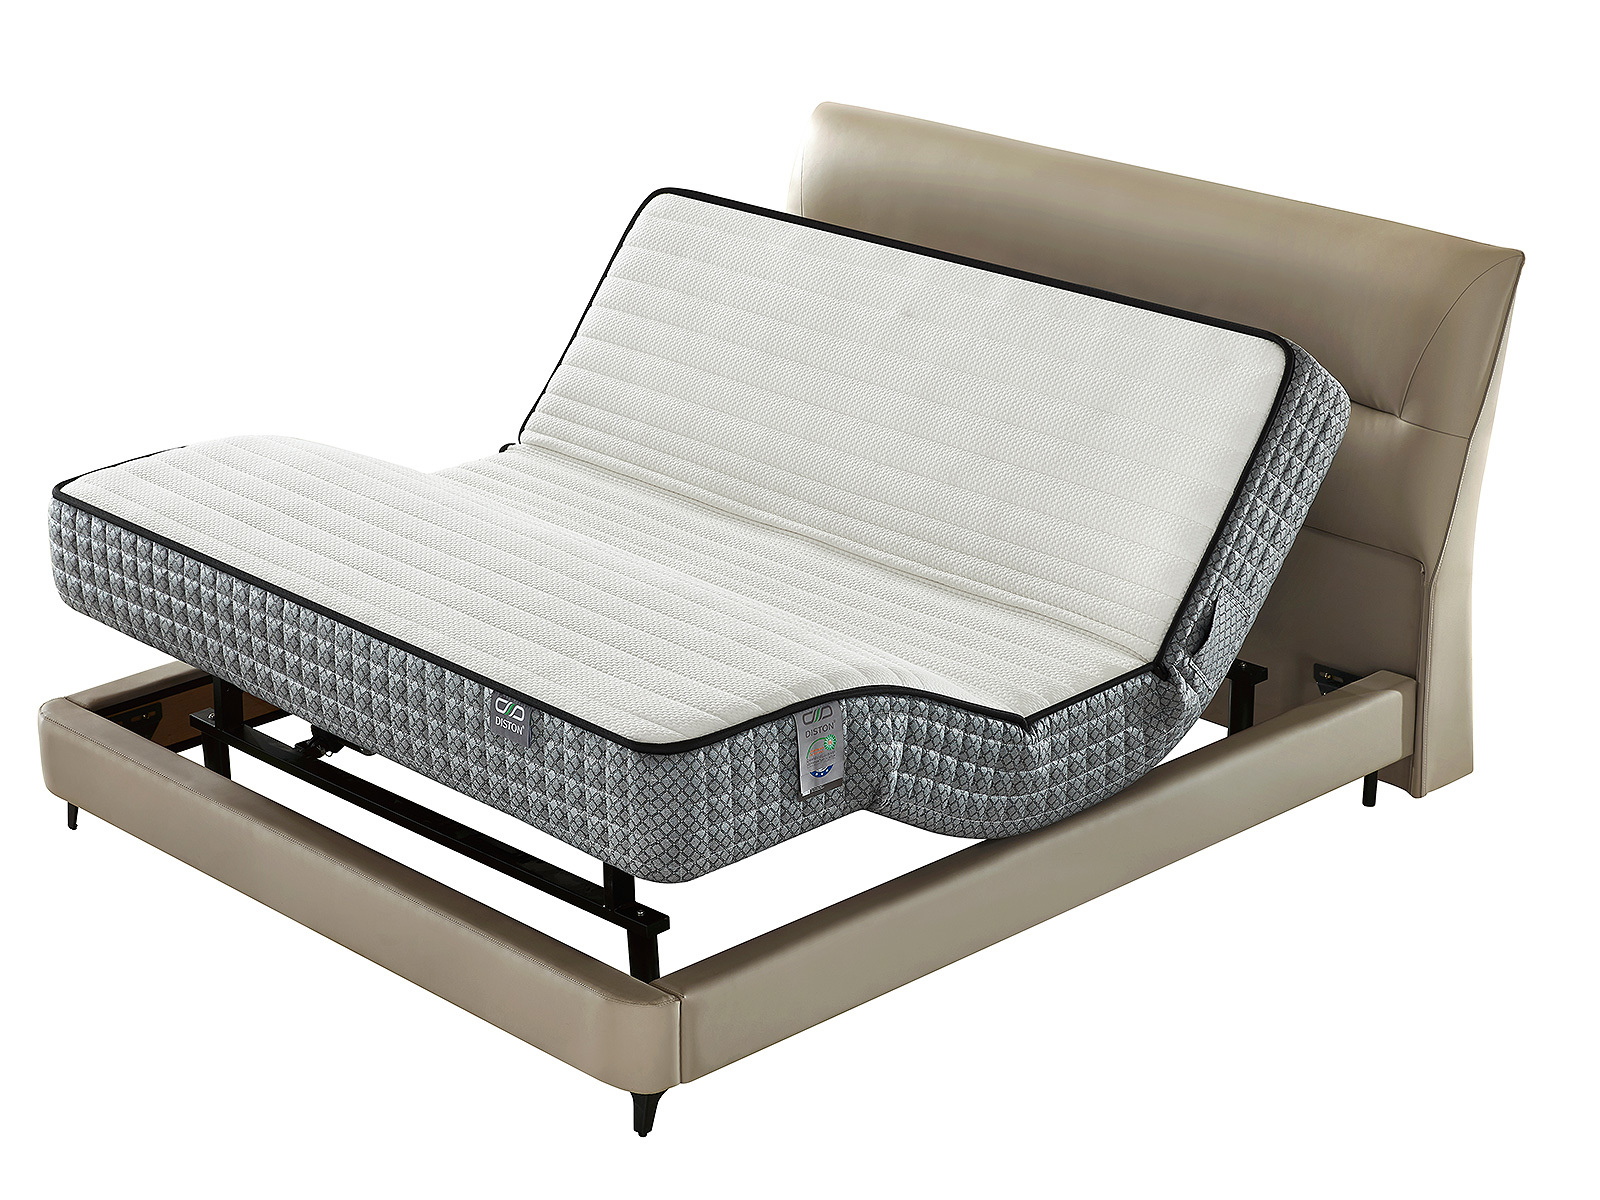 DST-106D Smart bed